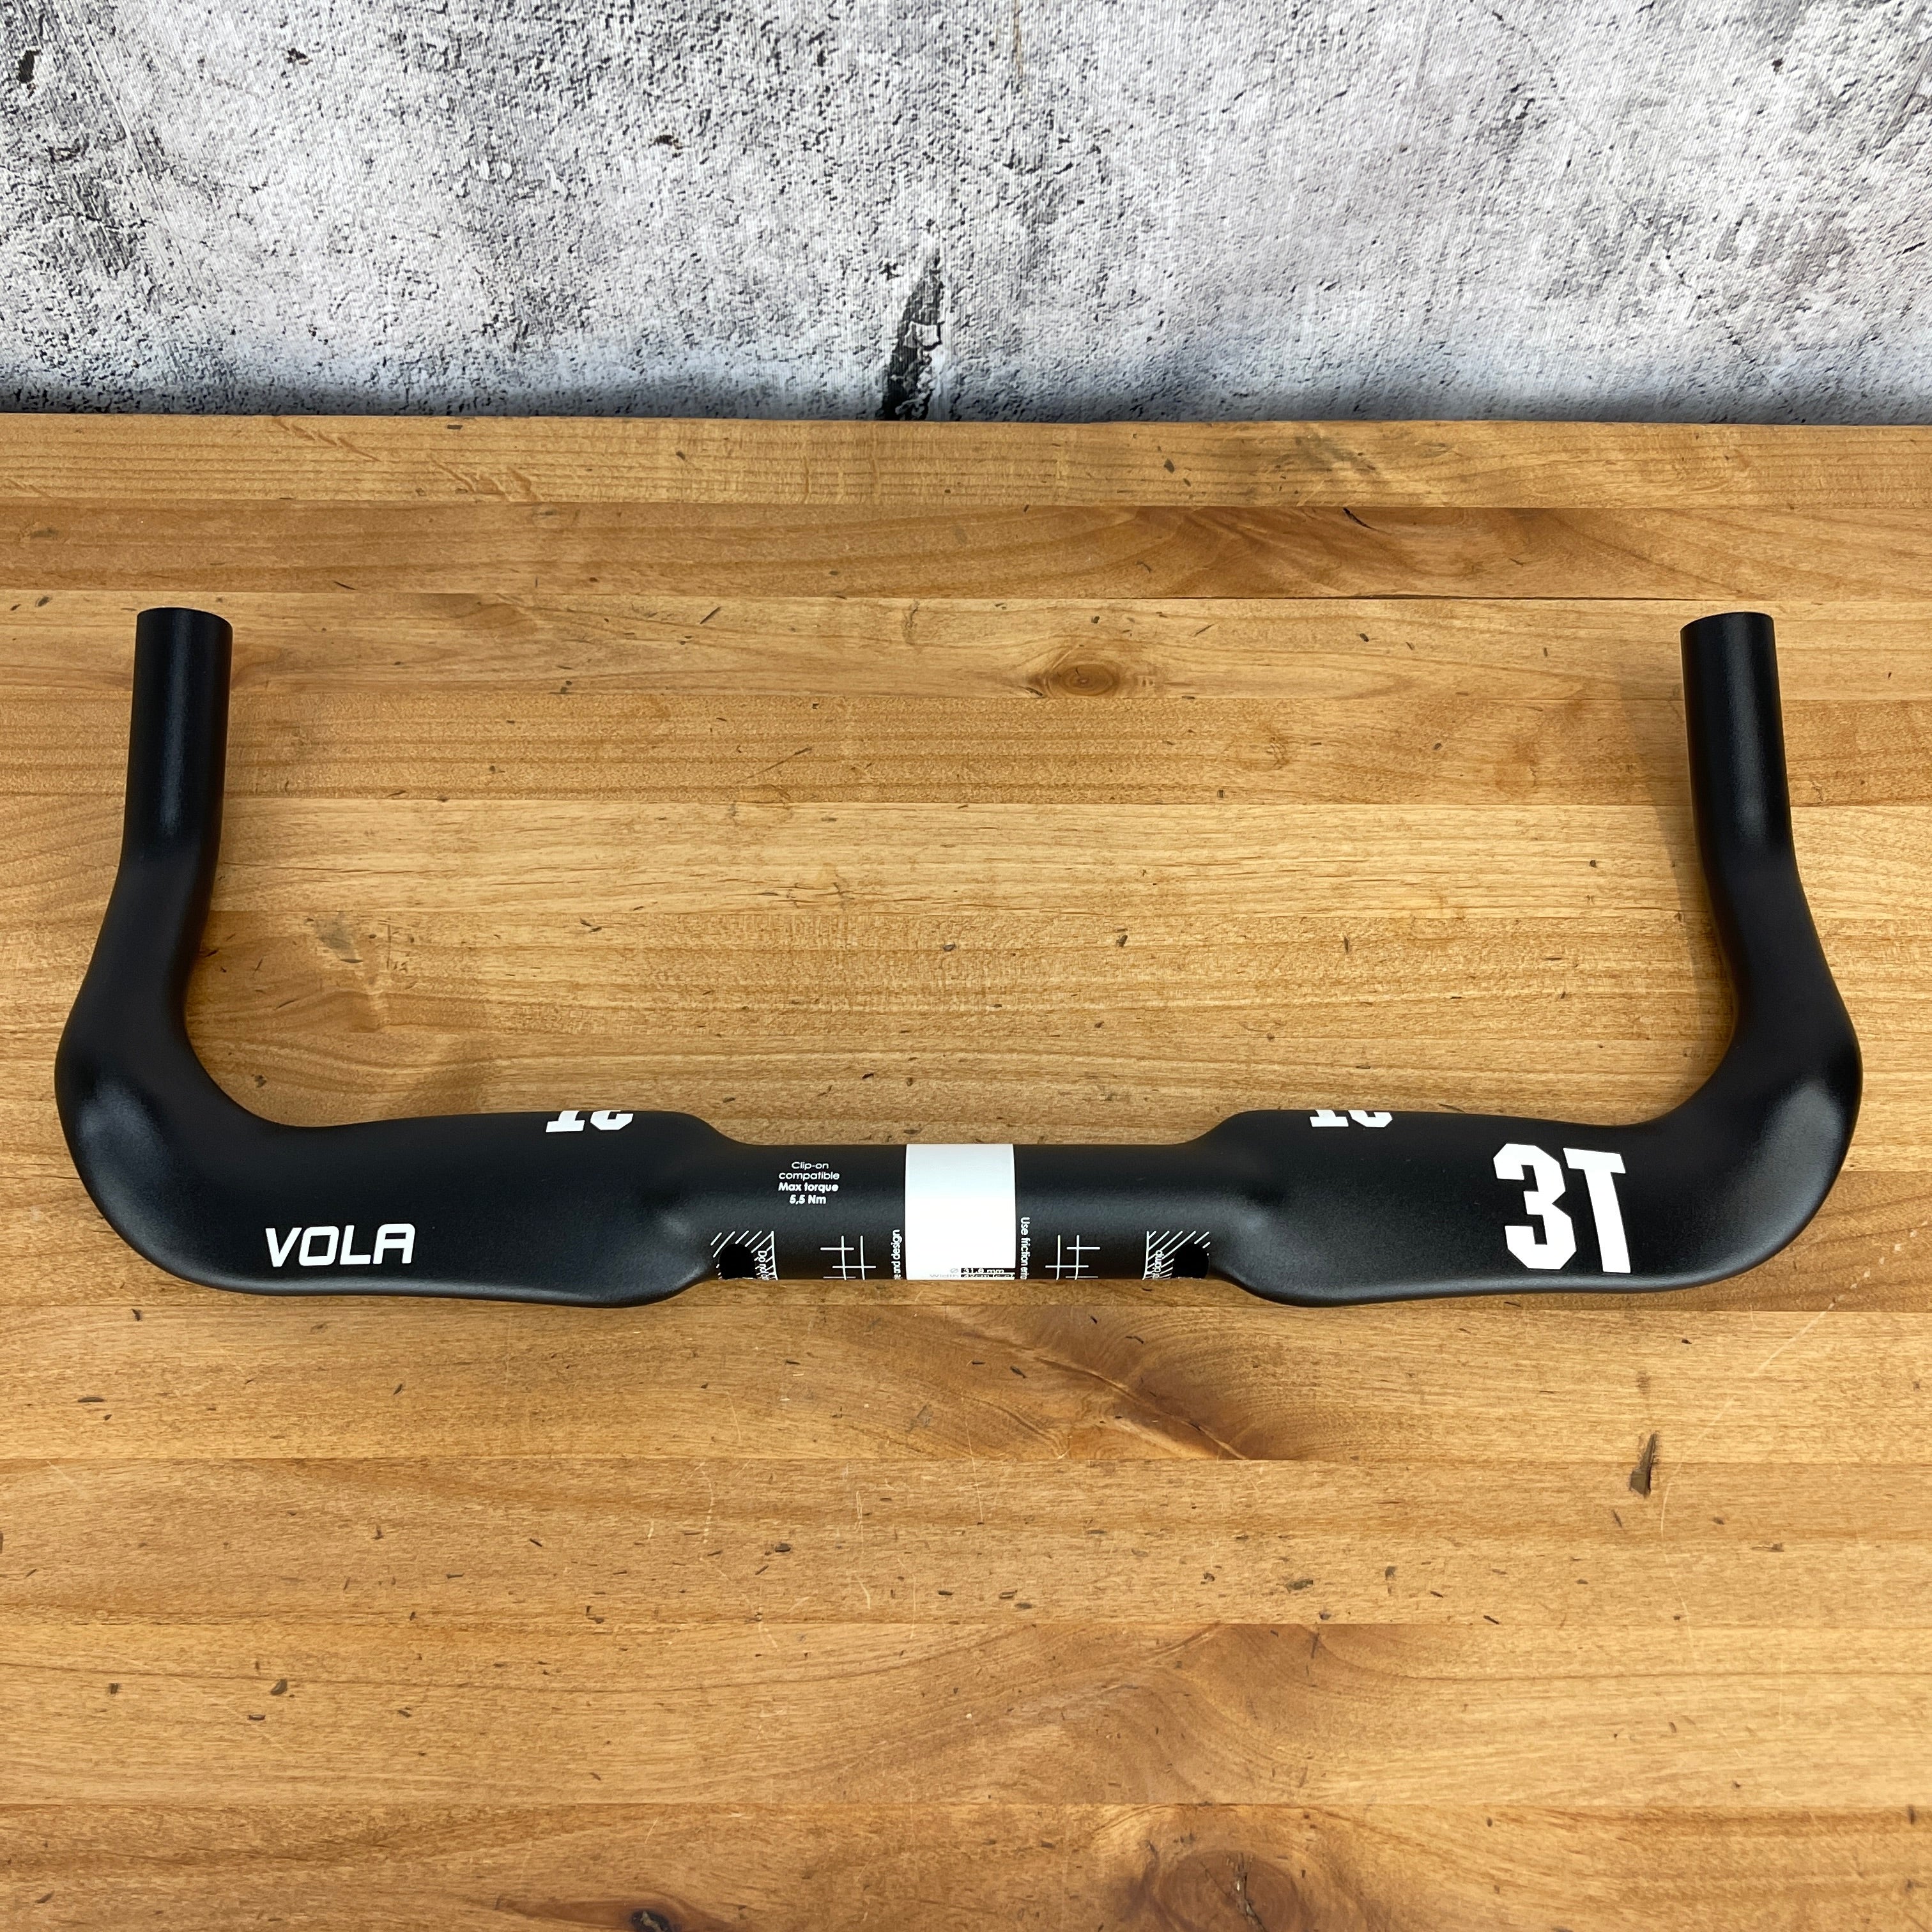 New! 3T Vola Pro TT 42cm 31.8mm TT/Triathlon Cycling Base Bar Alloy Ha –  CyclingUpgrades.com